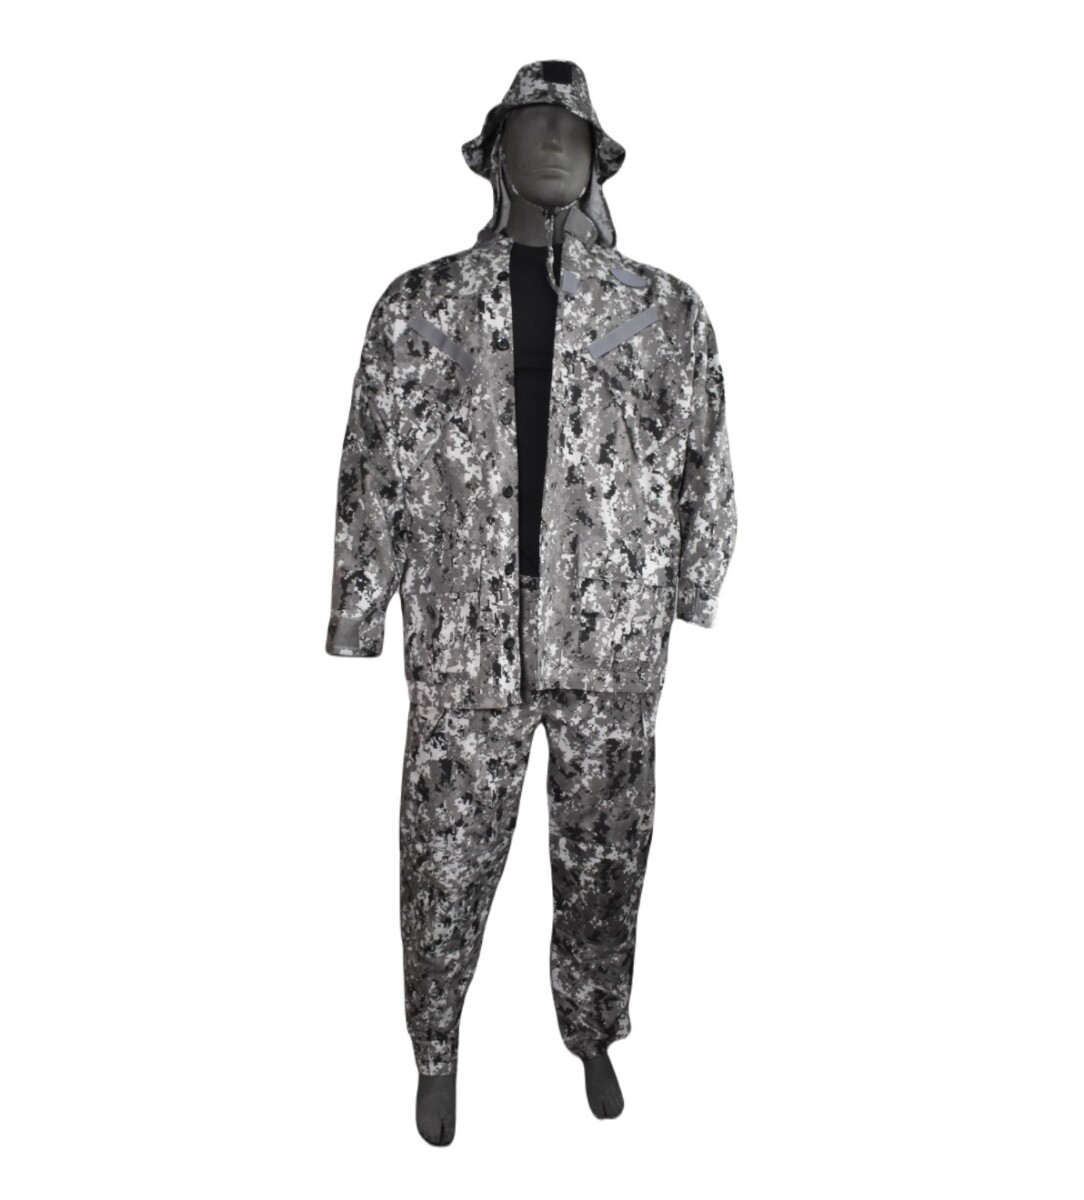 Equipo táctico chaqueta + pantalón + capelina - Pixelado gris 